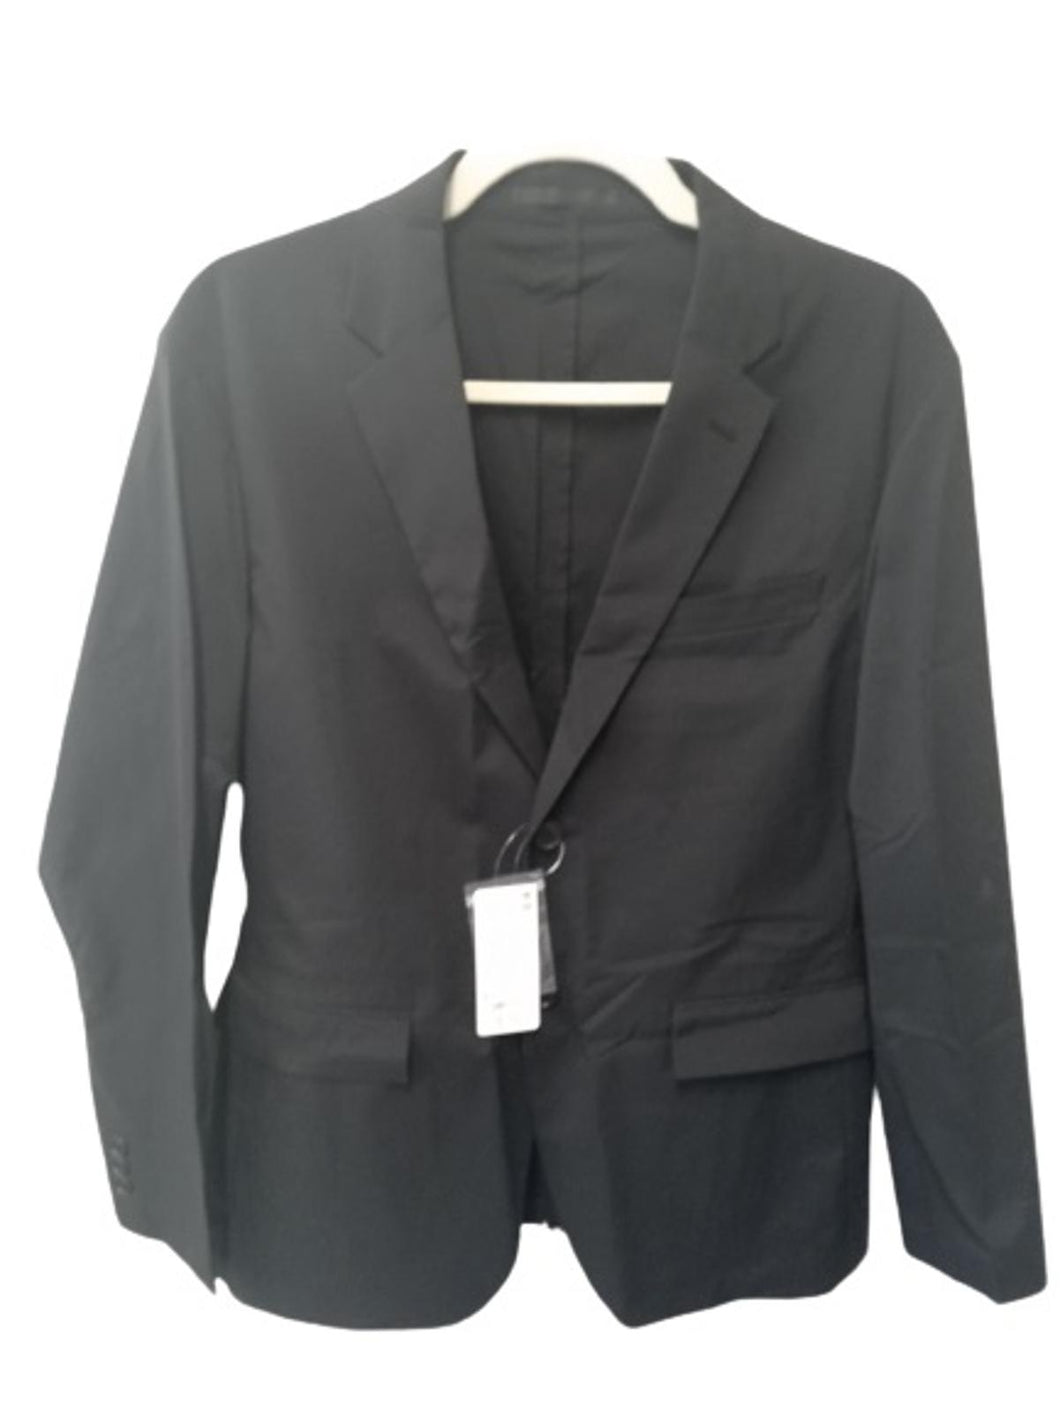 UNIQLO Men's Black Long Sleeve Button Front Kando Jacket Blazer Size UK S NEW